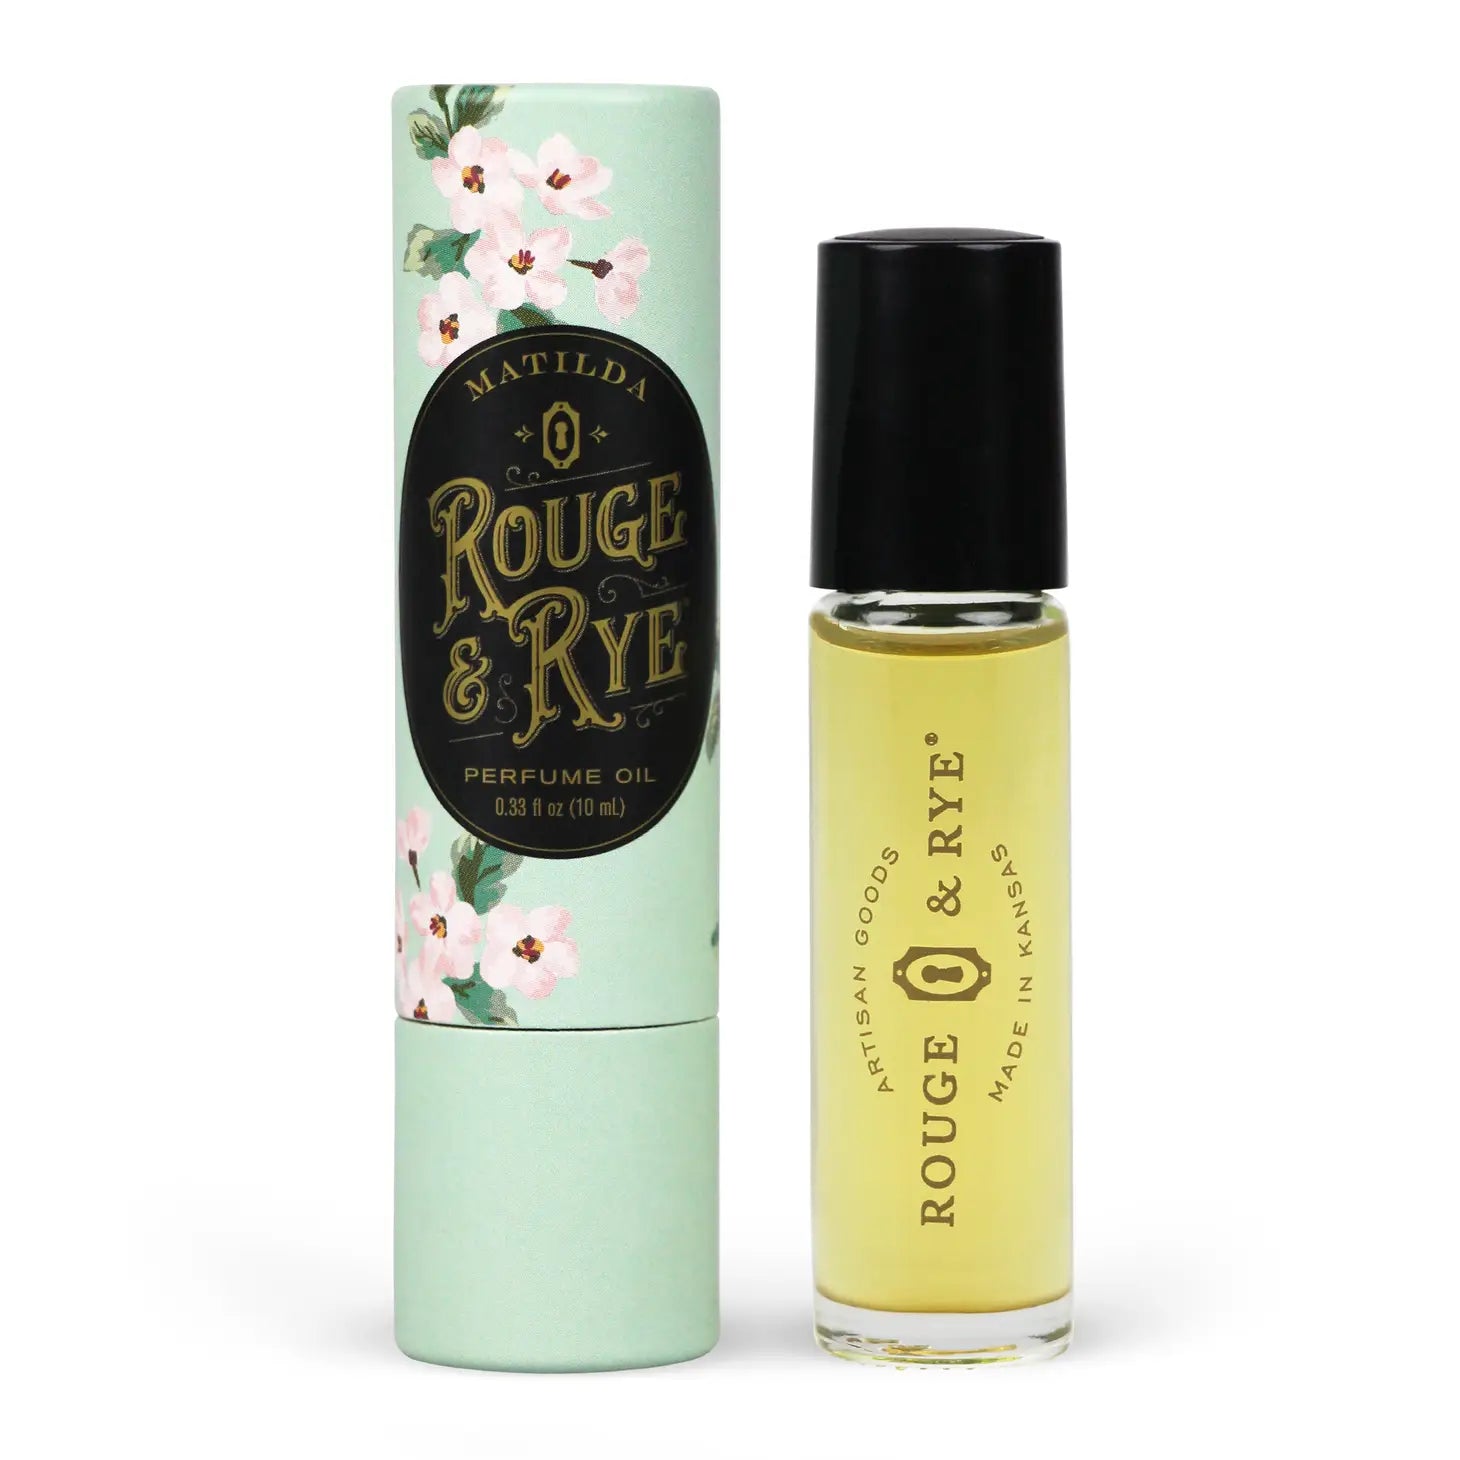 Matilda Perfume Oil: Lavender, Rosemary, Ylang Ylang and Citrus